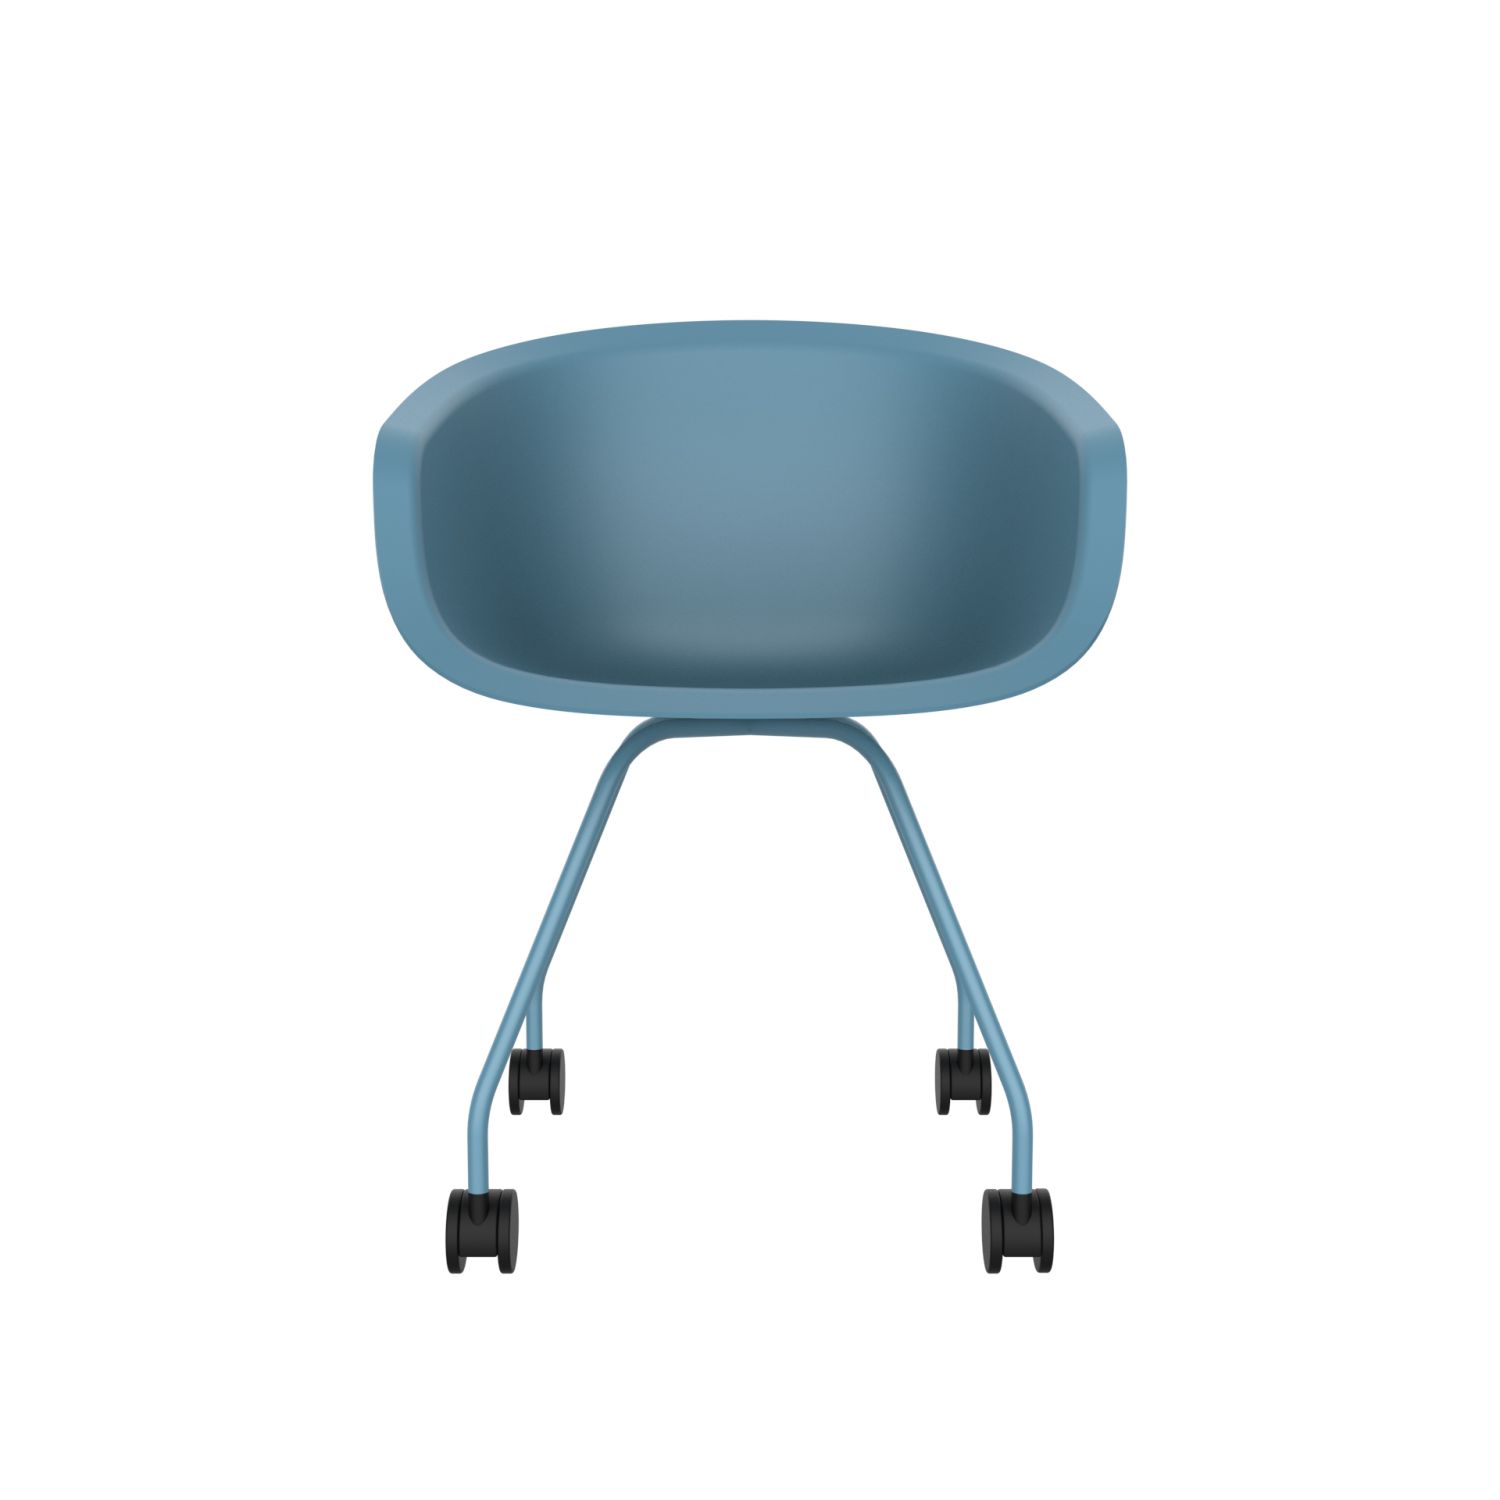 lensvelt richard hutten this bucket office chair steel base blue ral5024 blue ral5024 hard leg ends